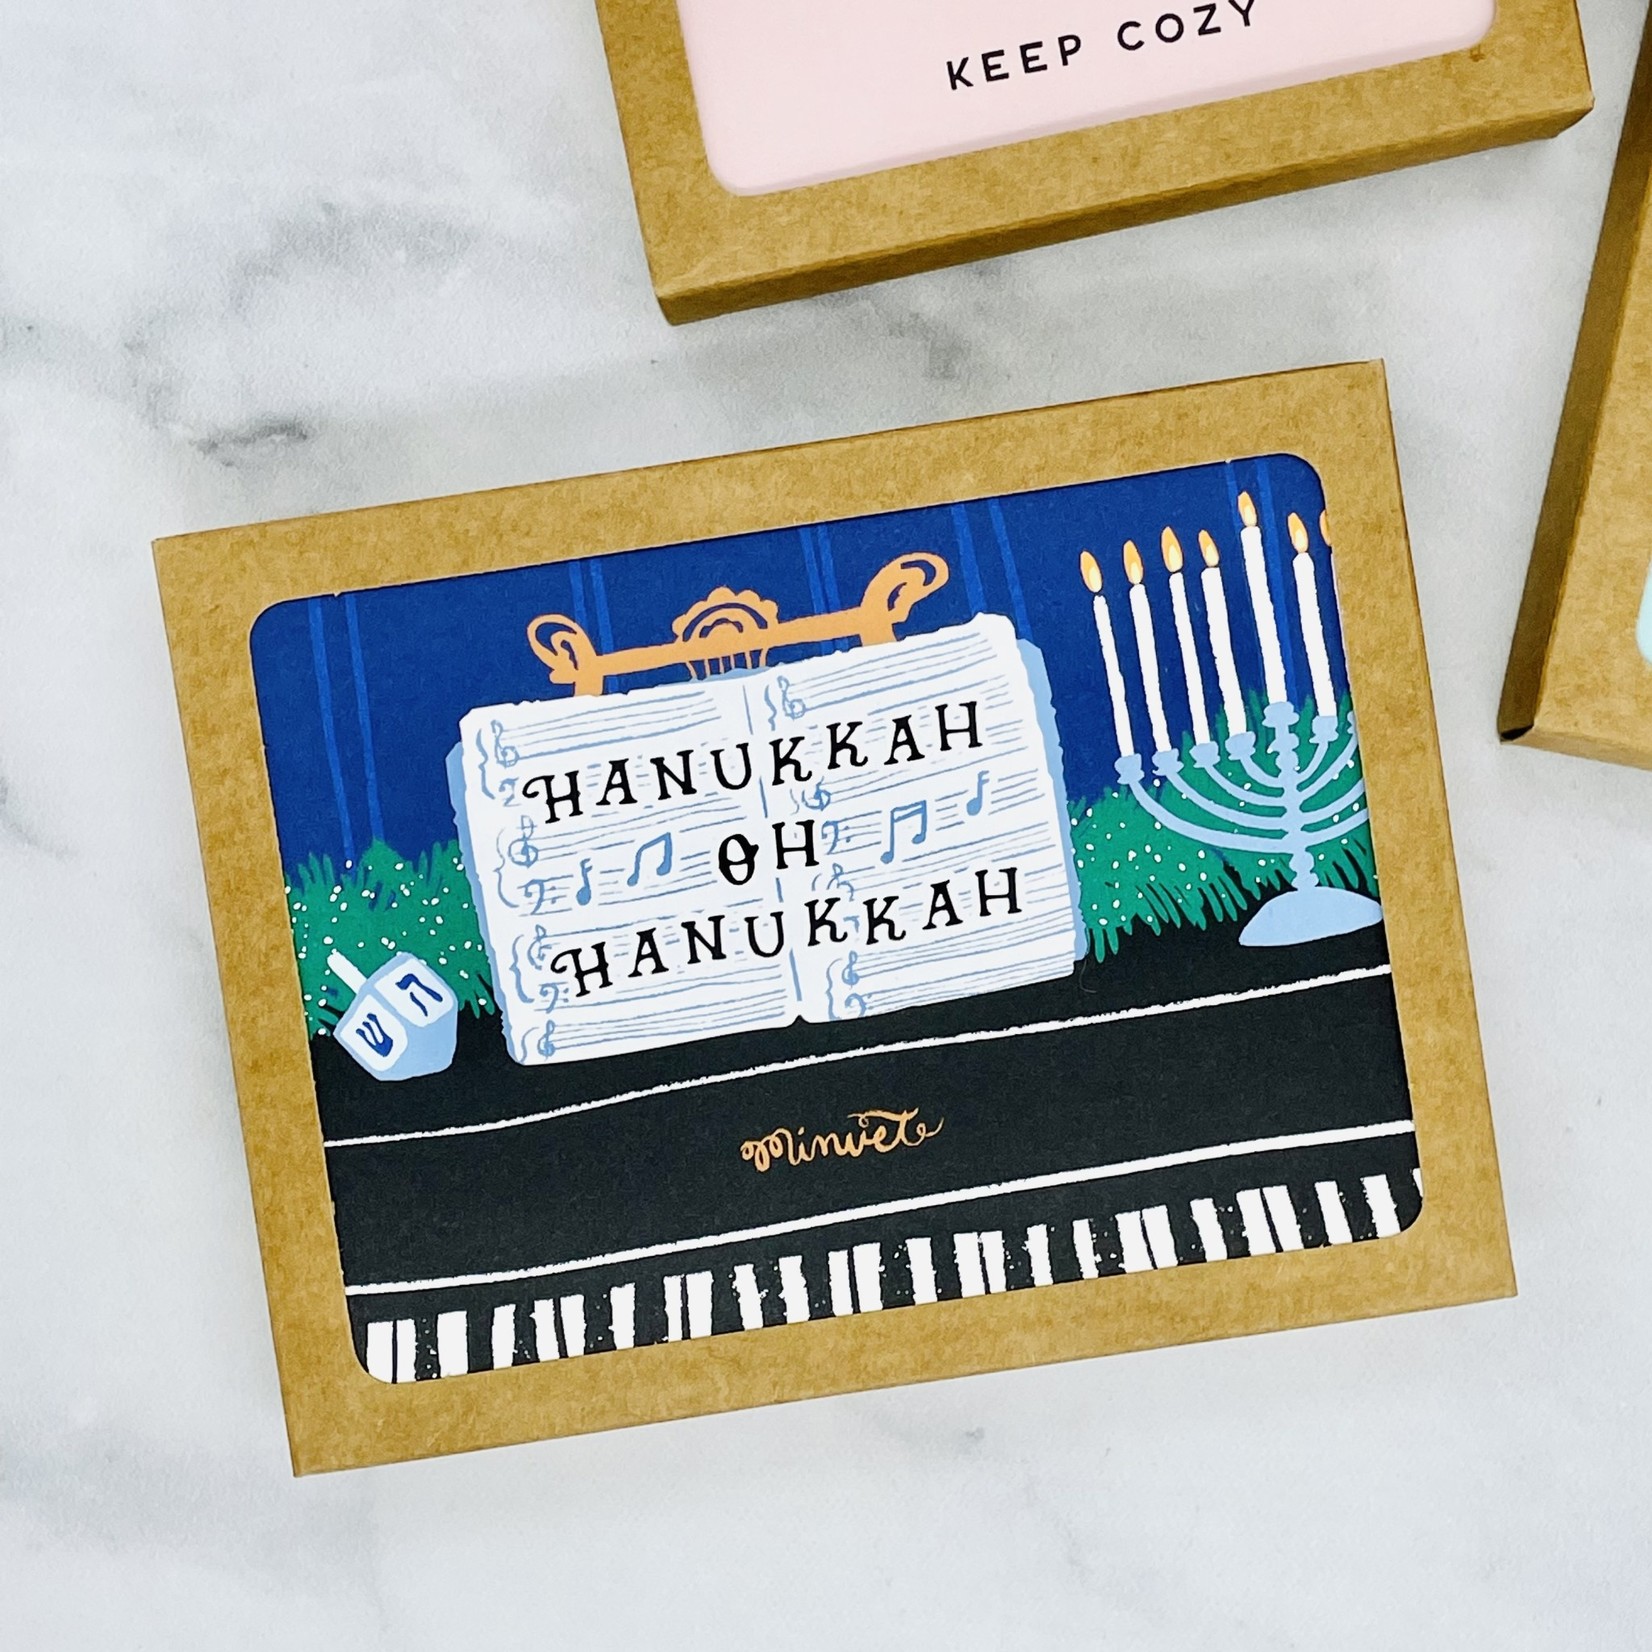 Boxed Hanukkah Piano Holiday Cards